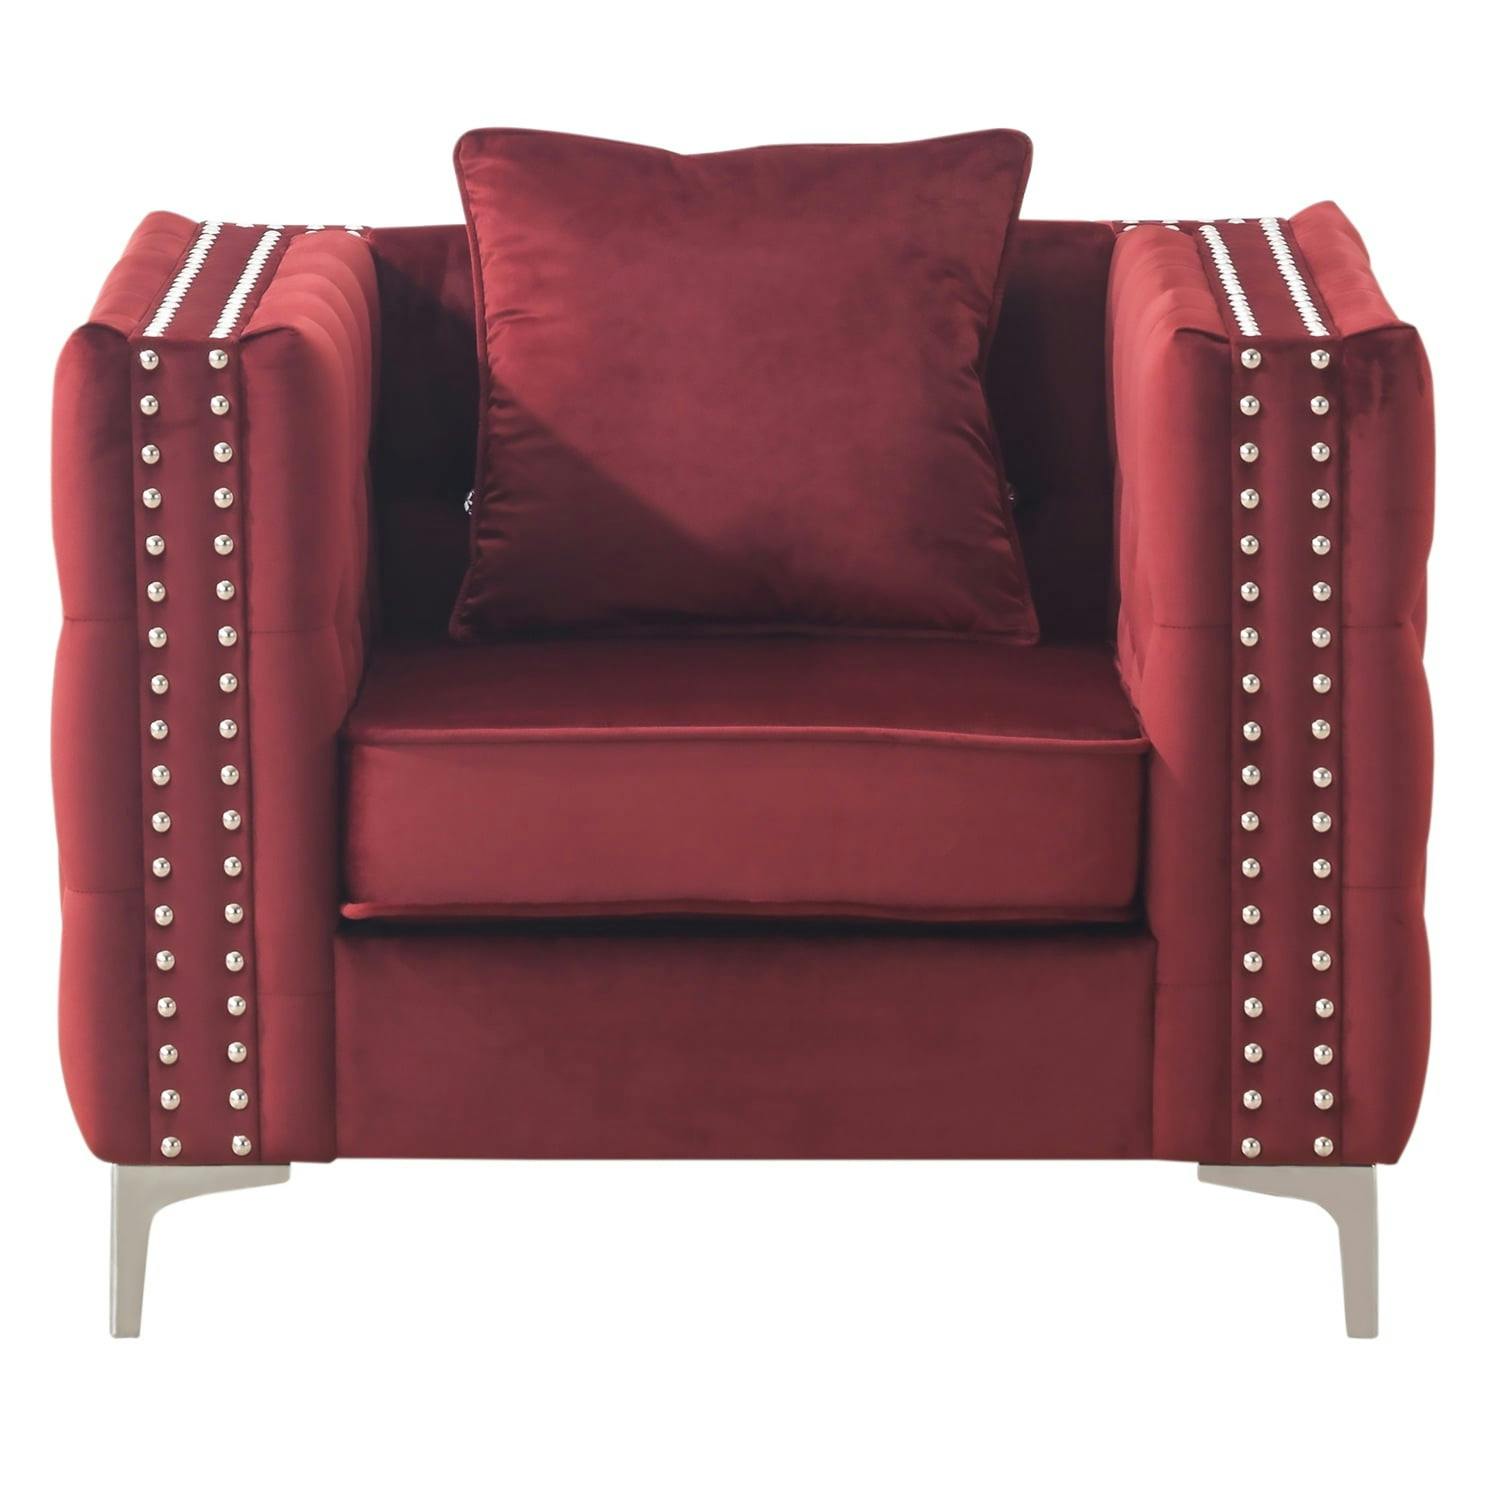 Elegant Gray Velvet Tufted Accent Chair with Chrome Legs